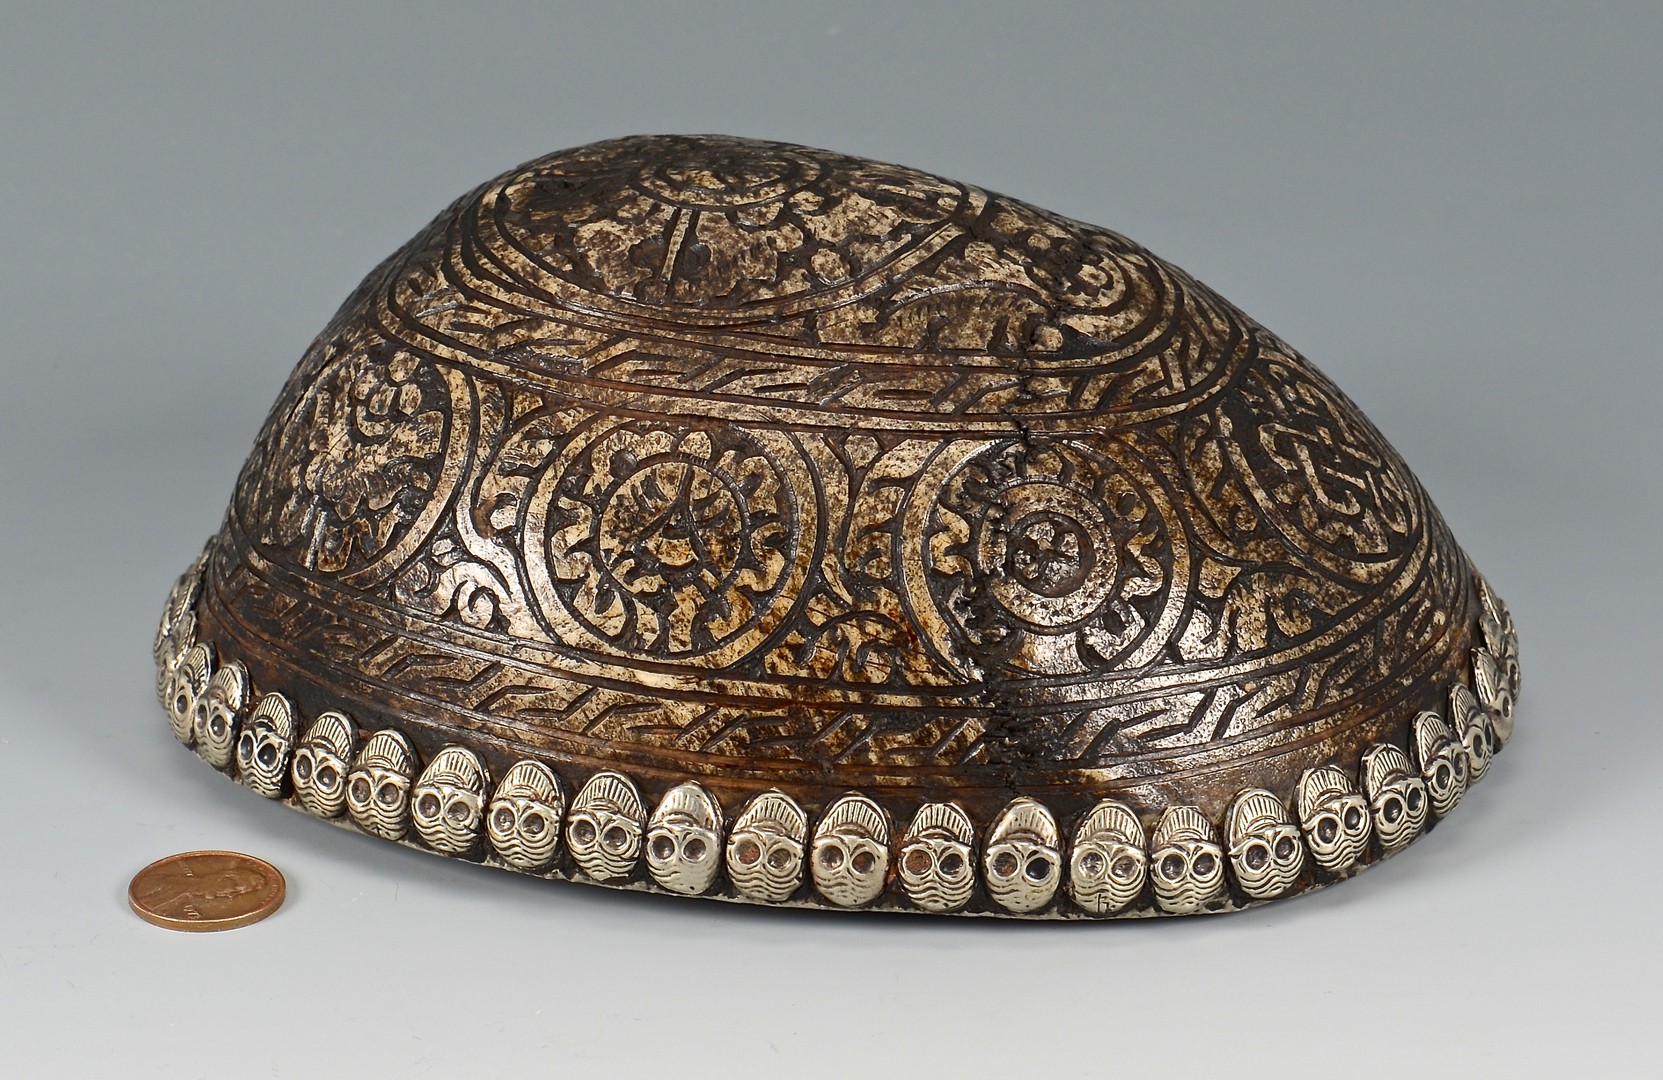 Lot 14: Tibetan Silver Mounted Skull Bowl